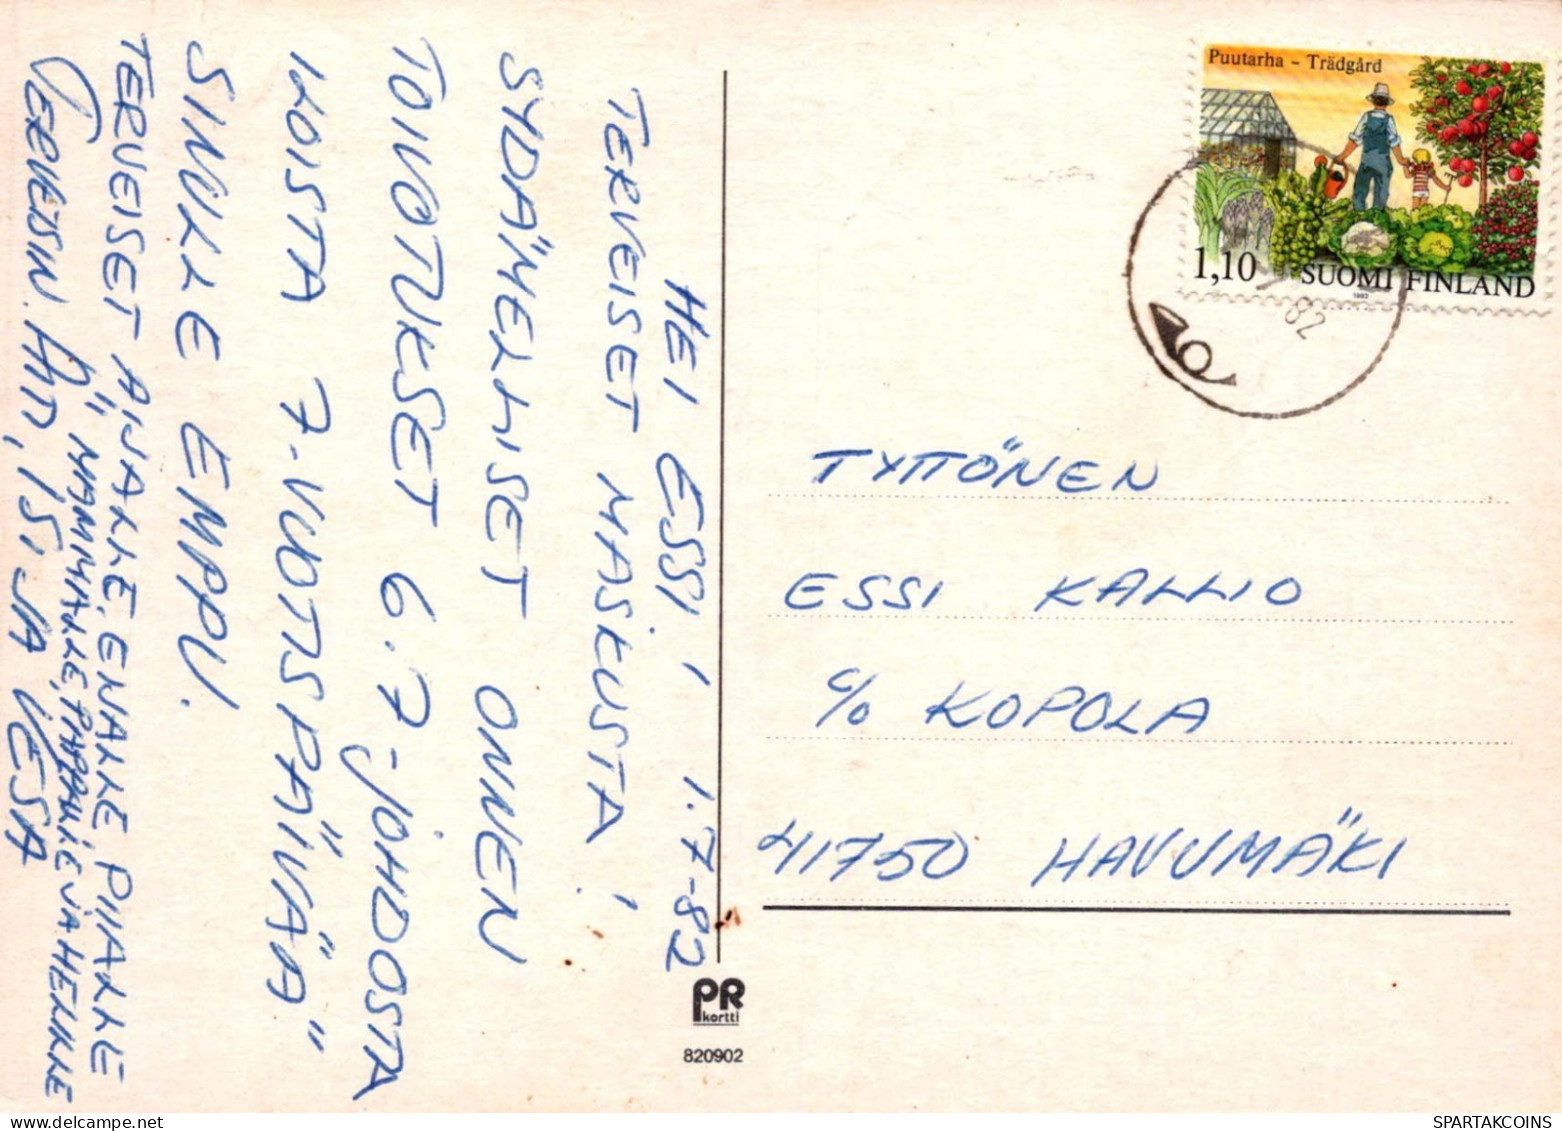 KINDER KINDER Szene S Landschafts Vintage Postal CPSM #PBT673.DE - Scènes & Paysages